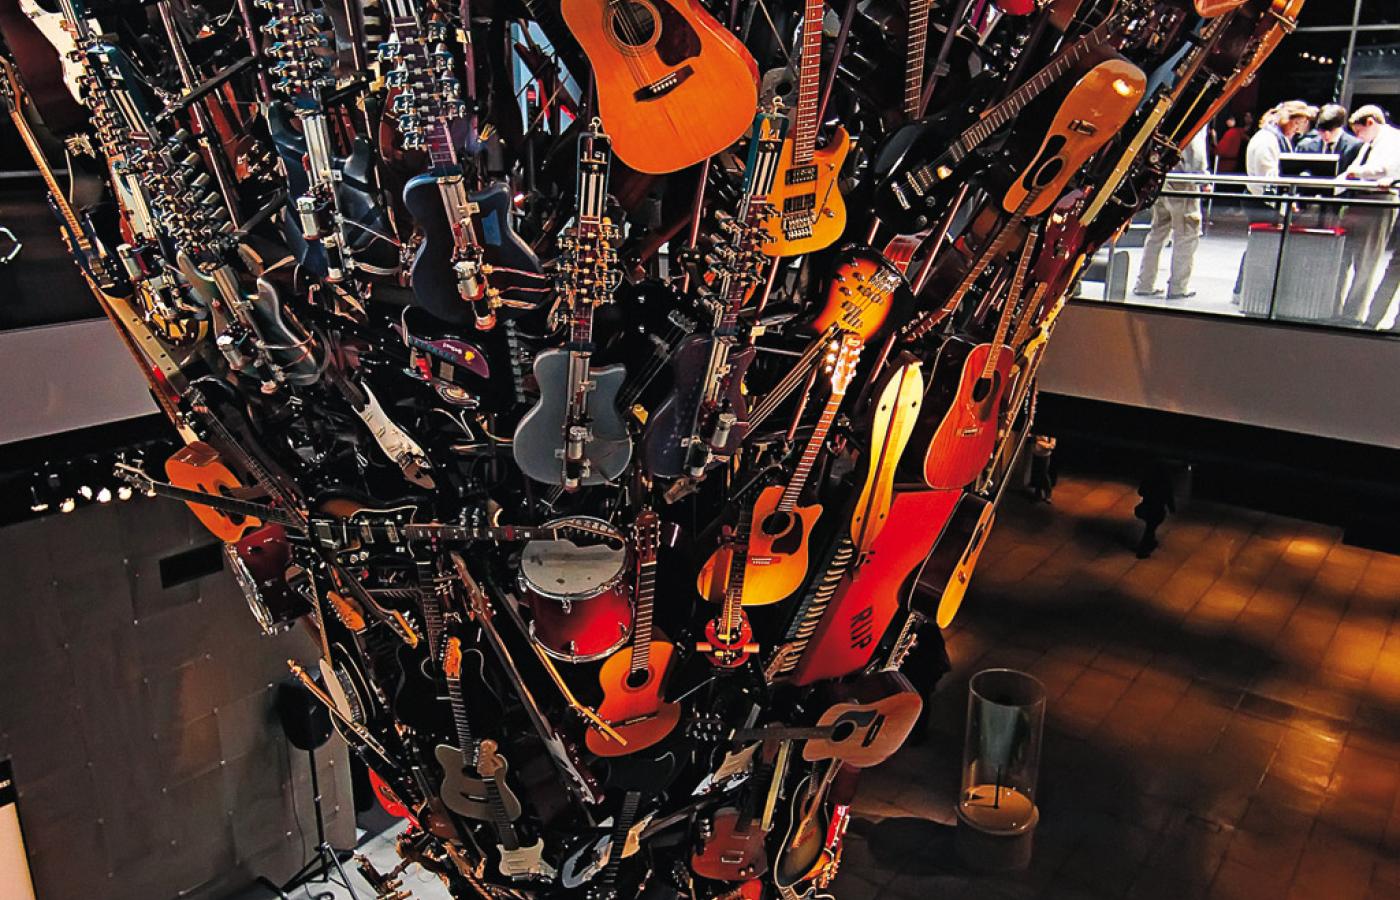 W gromadzącym muzyczne pamiątki Experience Music Project w Seattle stoi 4-piętrowa instalacja zbudowana z ponad 700 gitar.